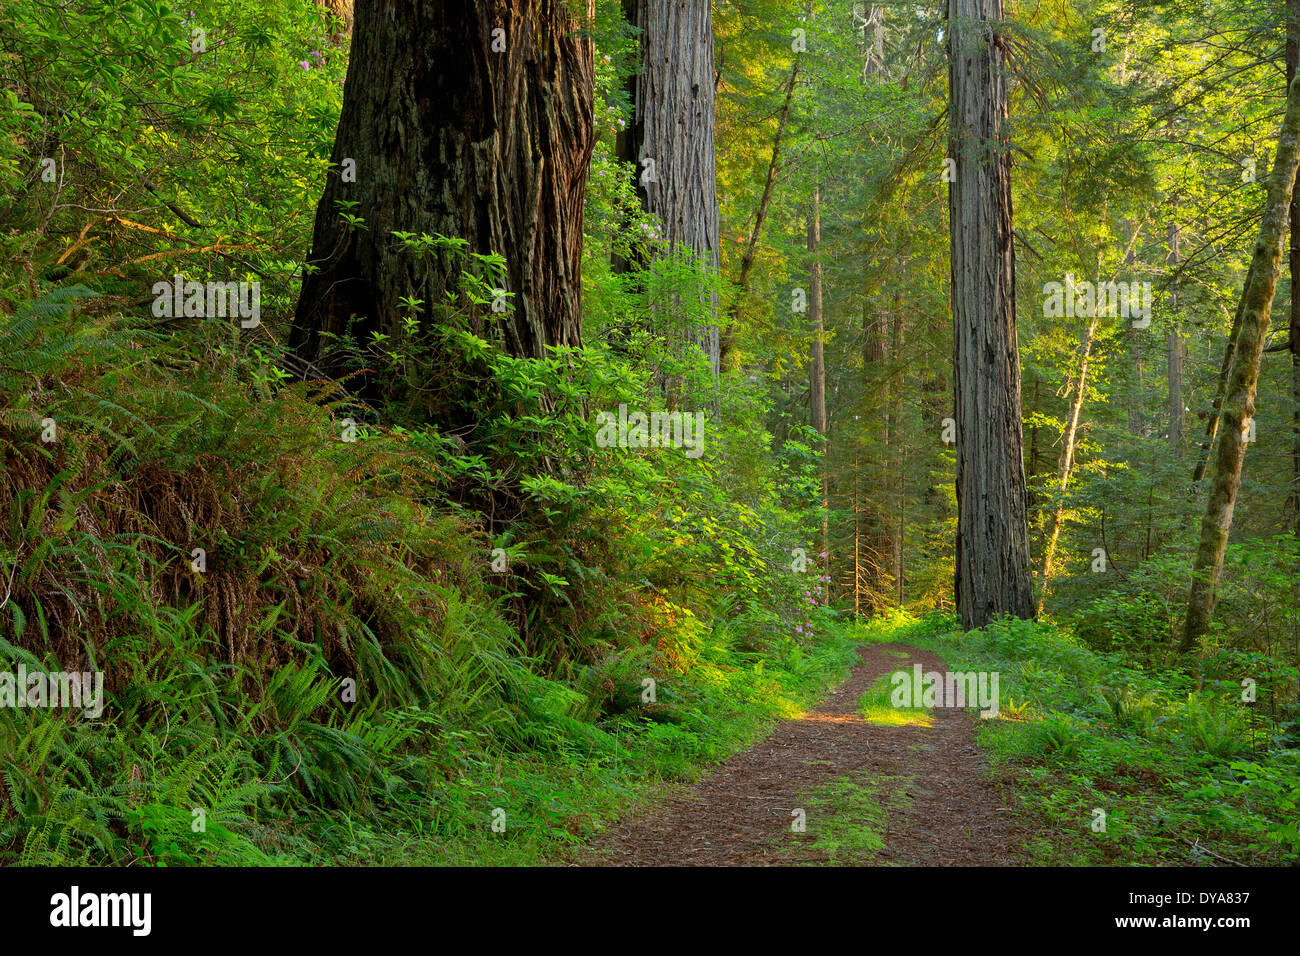 CA California ESTADOS UNIDOS Estados Unidos de América Parque Nacional Redwood secuoyas Redwood Forest Sequoia sempervirens de árboles forestales, los árboles Foto de stock